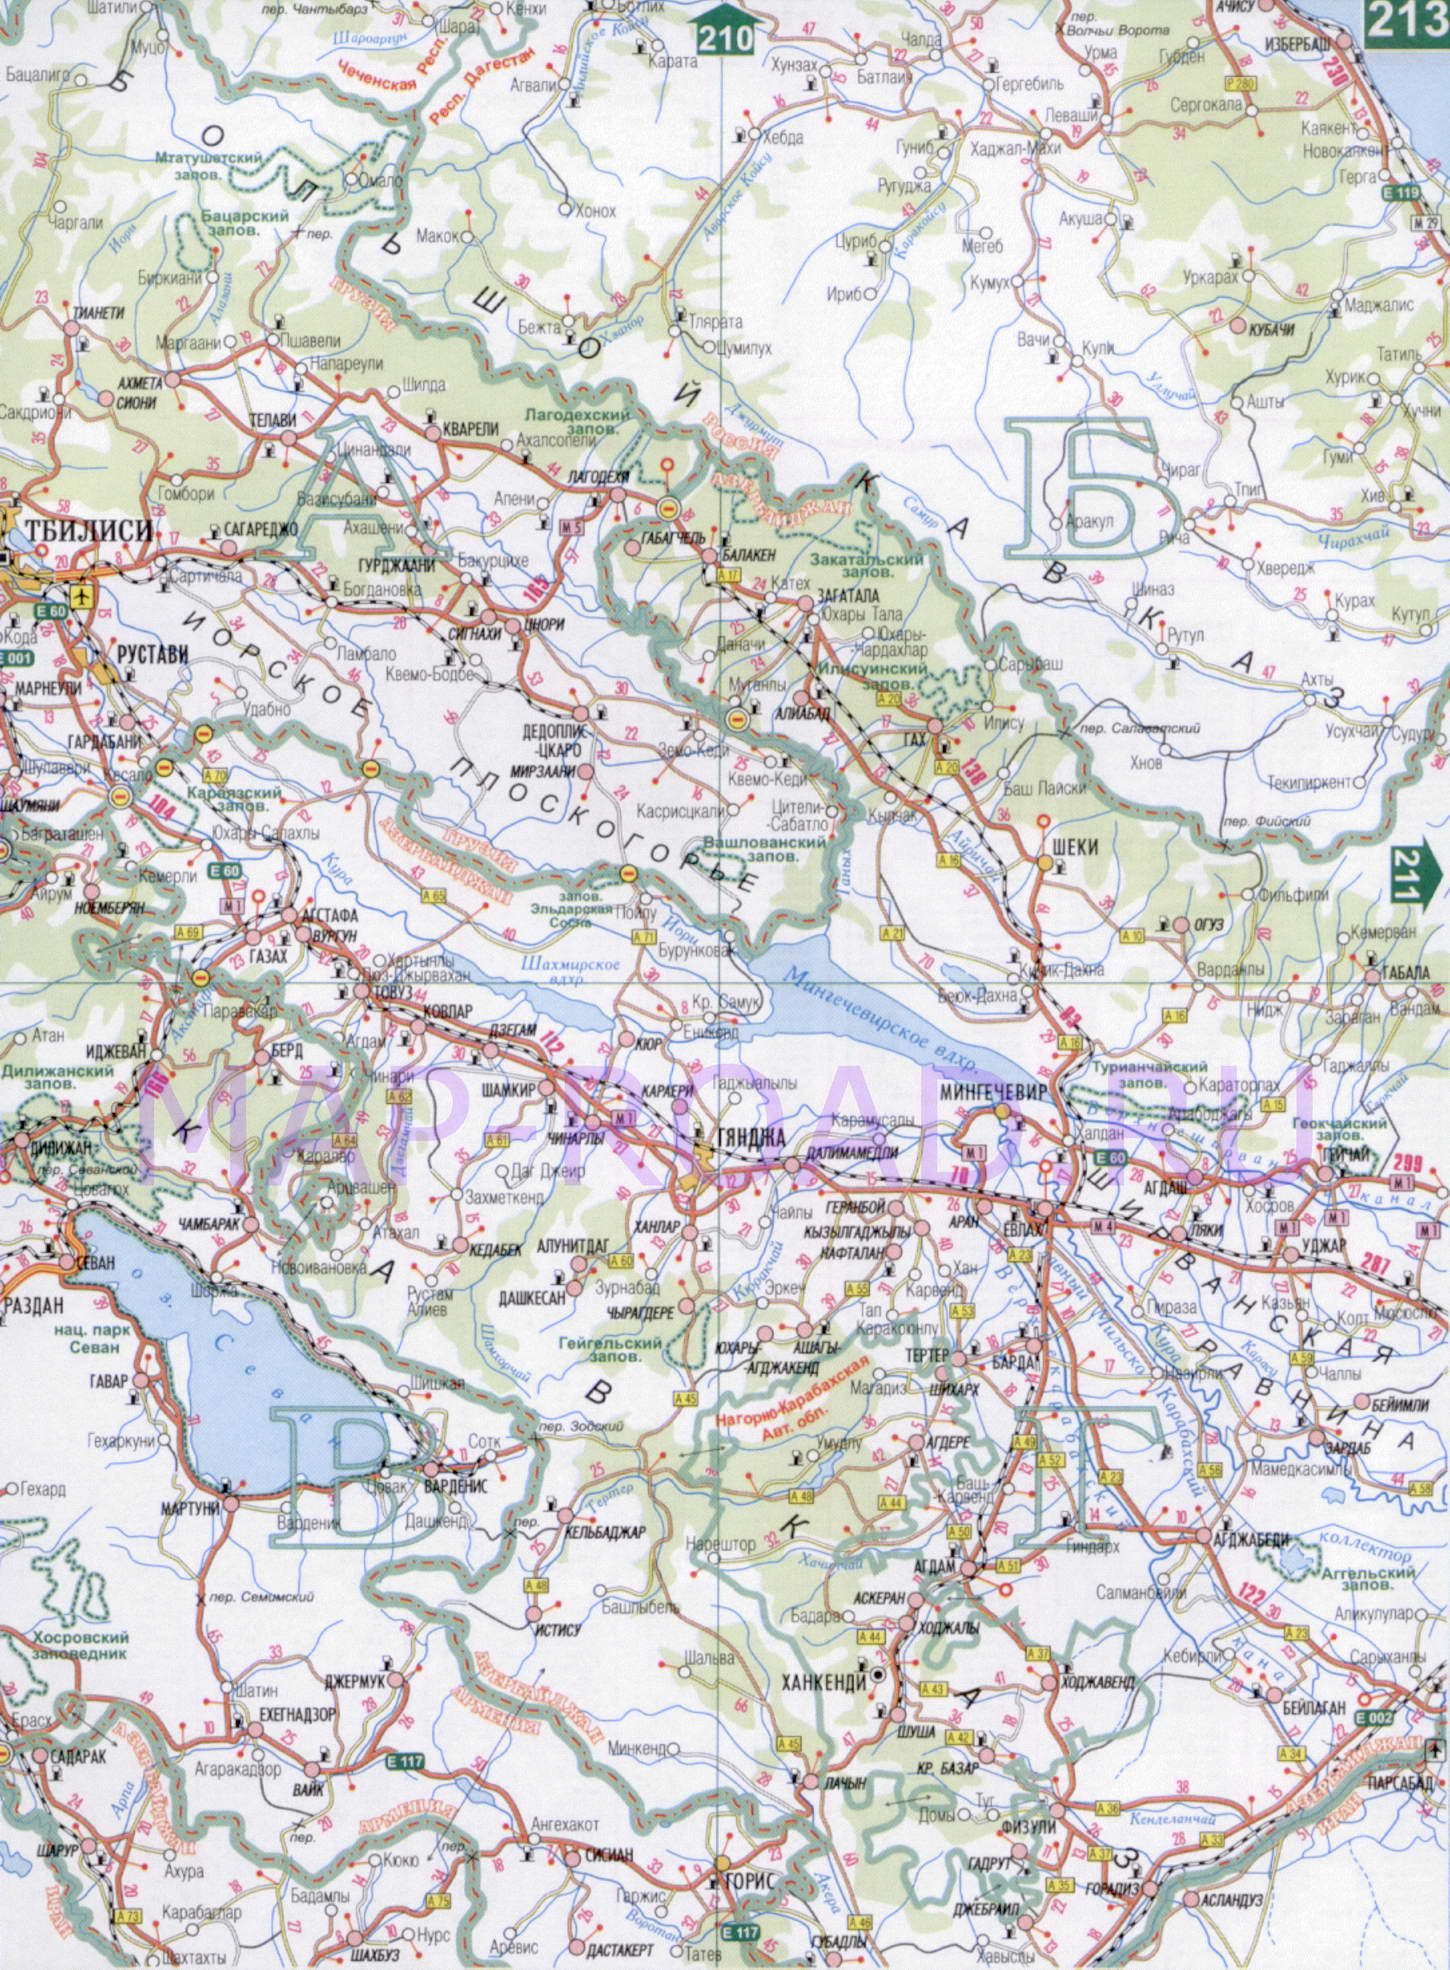 Карта Армении 1см:15км. Подробная карта железных и автомобильных дорог Армении, B0 - 